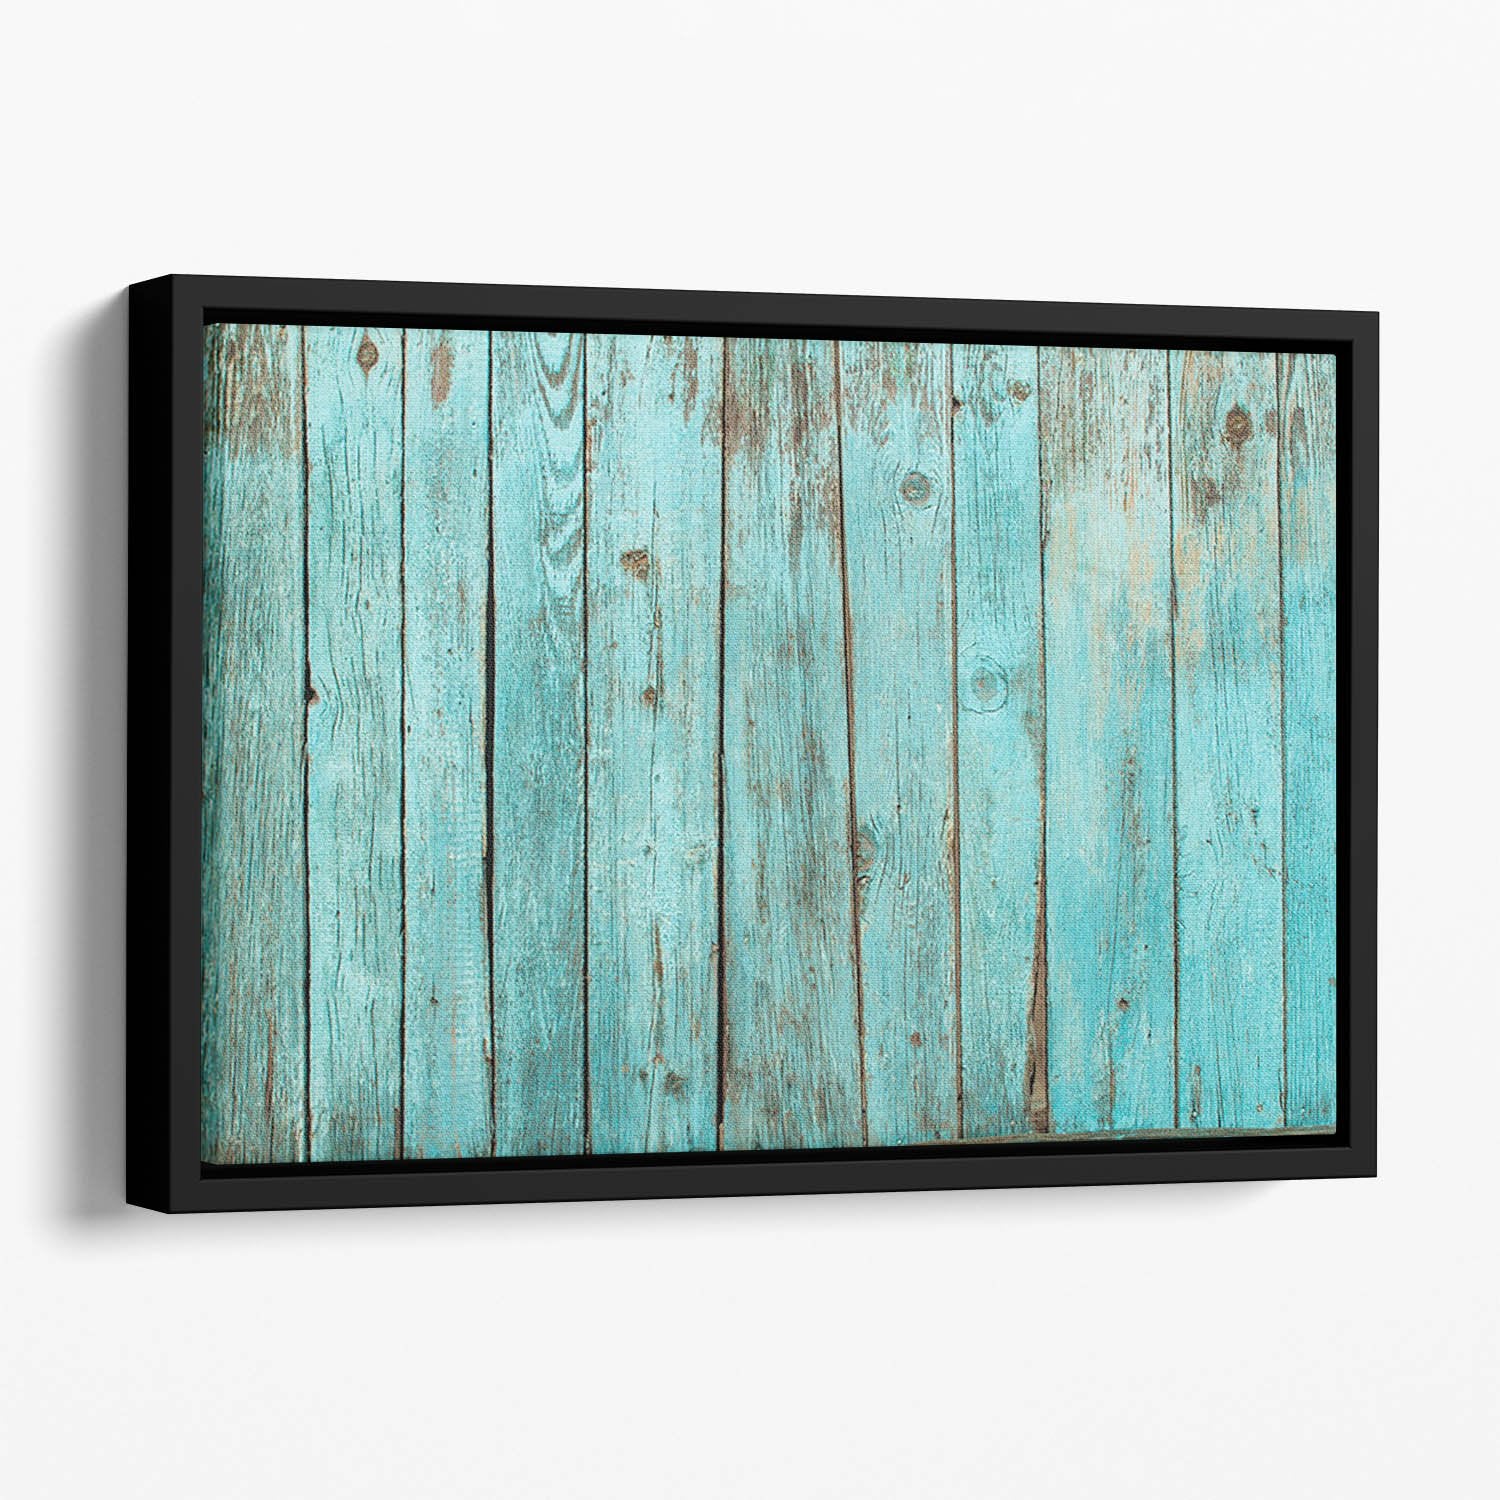 Battered old wooden blue Floating Framed Canvas